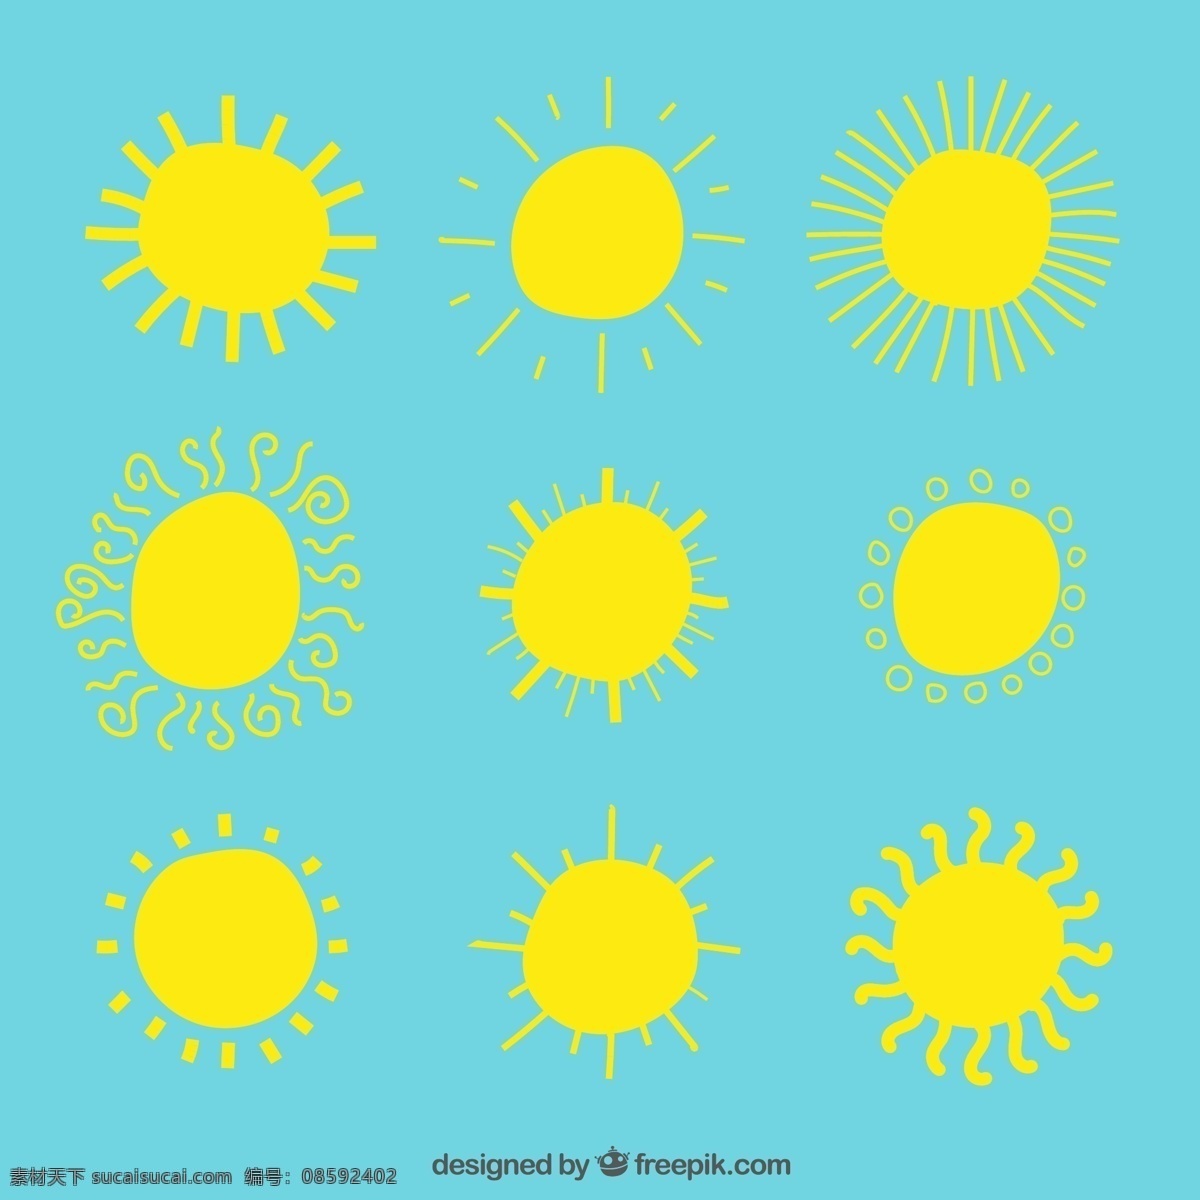 手绘 黄色 太阳 夏天 一方面 画画 天气 阳光 手工绘图 绘制的 晴朗的 粗略的 青色 天蓝色